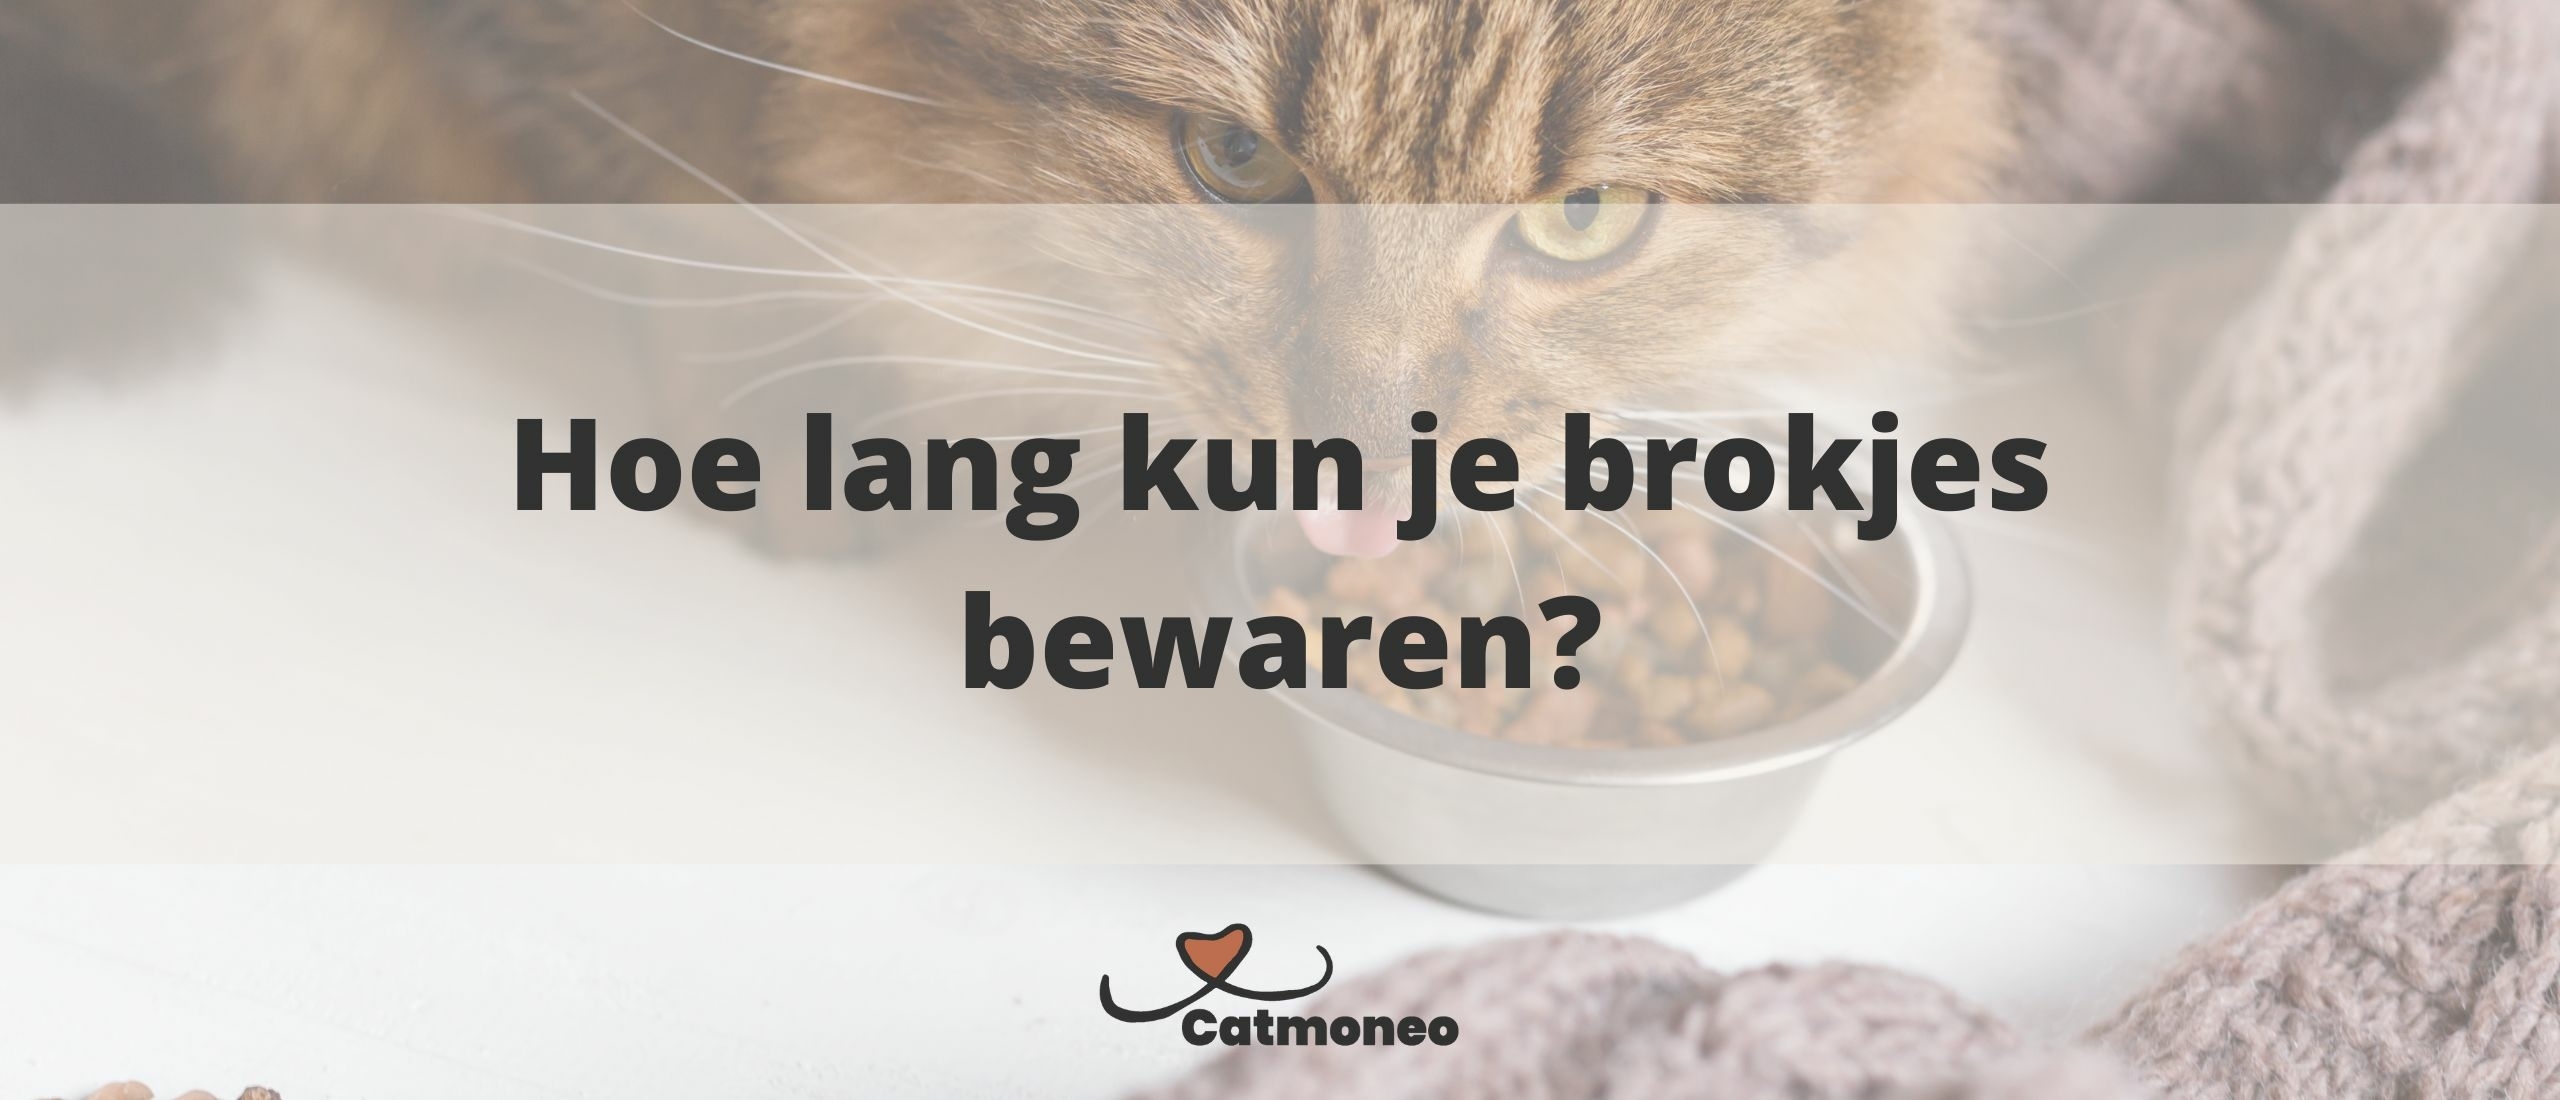 Houdbaarheid van kattenbrokken: Hoe lang kun je brokjes bewaren?